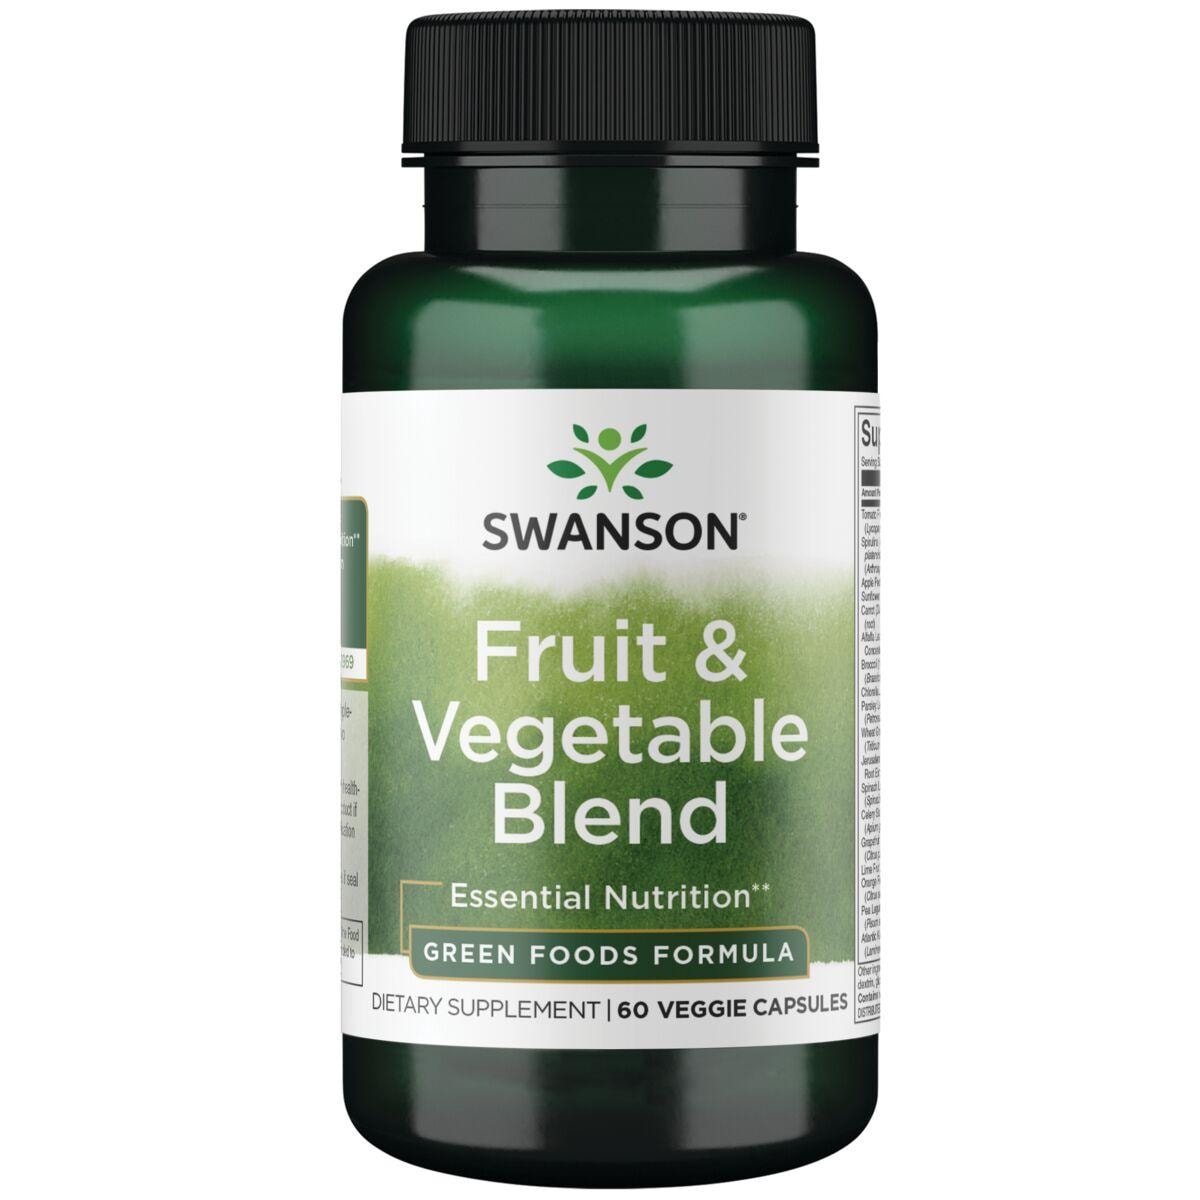 Swanson GreenFoods Formulas Fruit & Vegetable Blend Supplement Vitamin | 60 Veg Caps